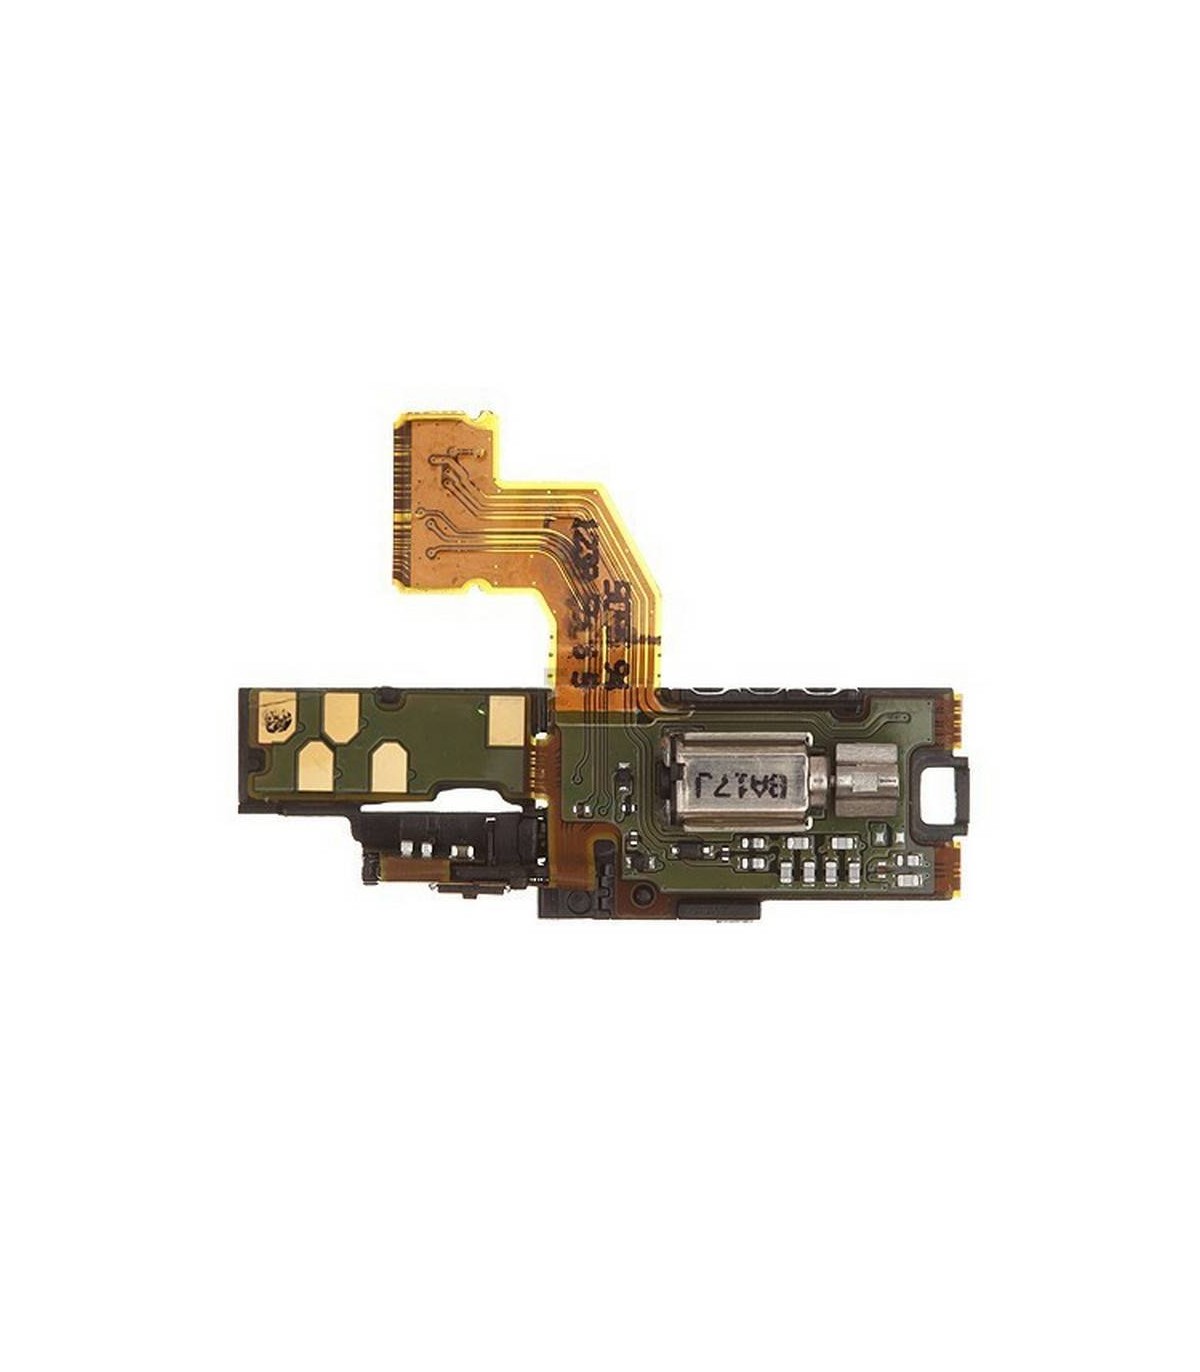  Boton de ignição (Power) e sensores proximidade de Sony Ericsson Xperia Arc X12 LT15, LT15a, LT18,ARC S 